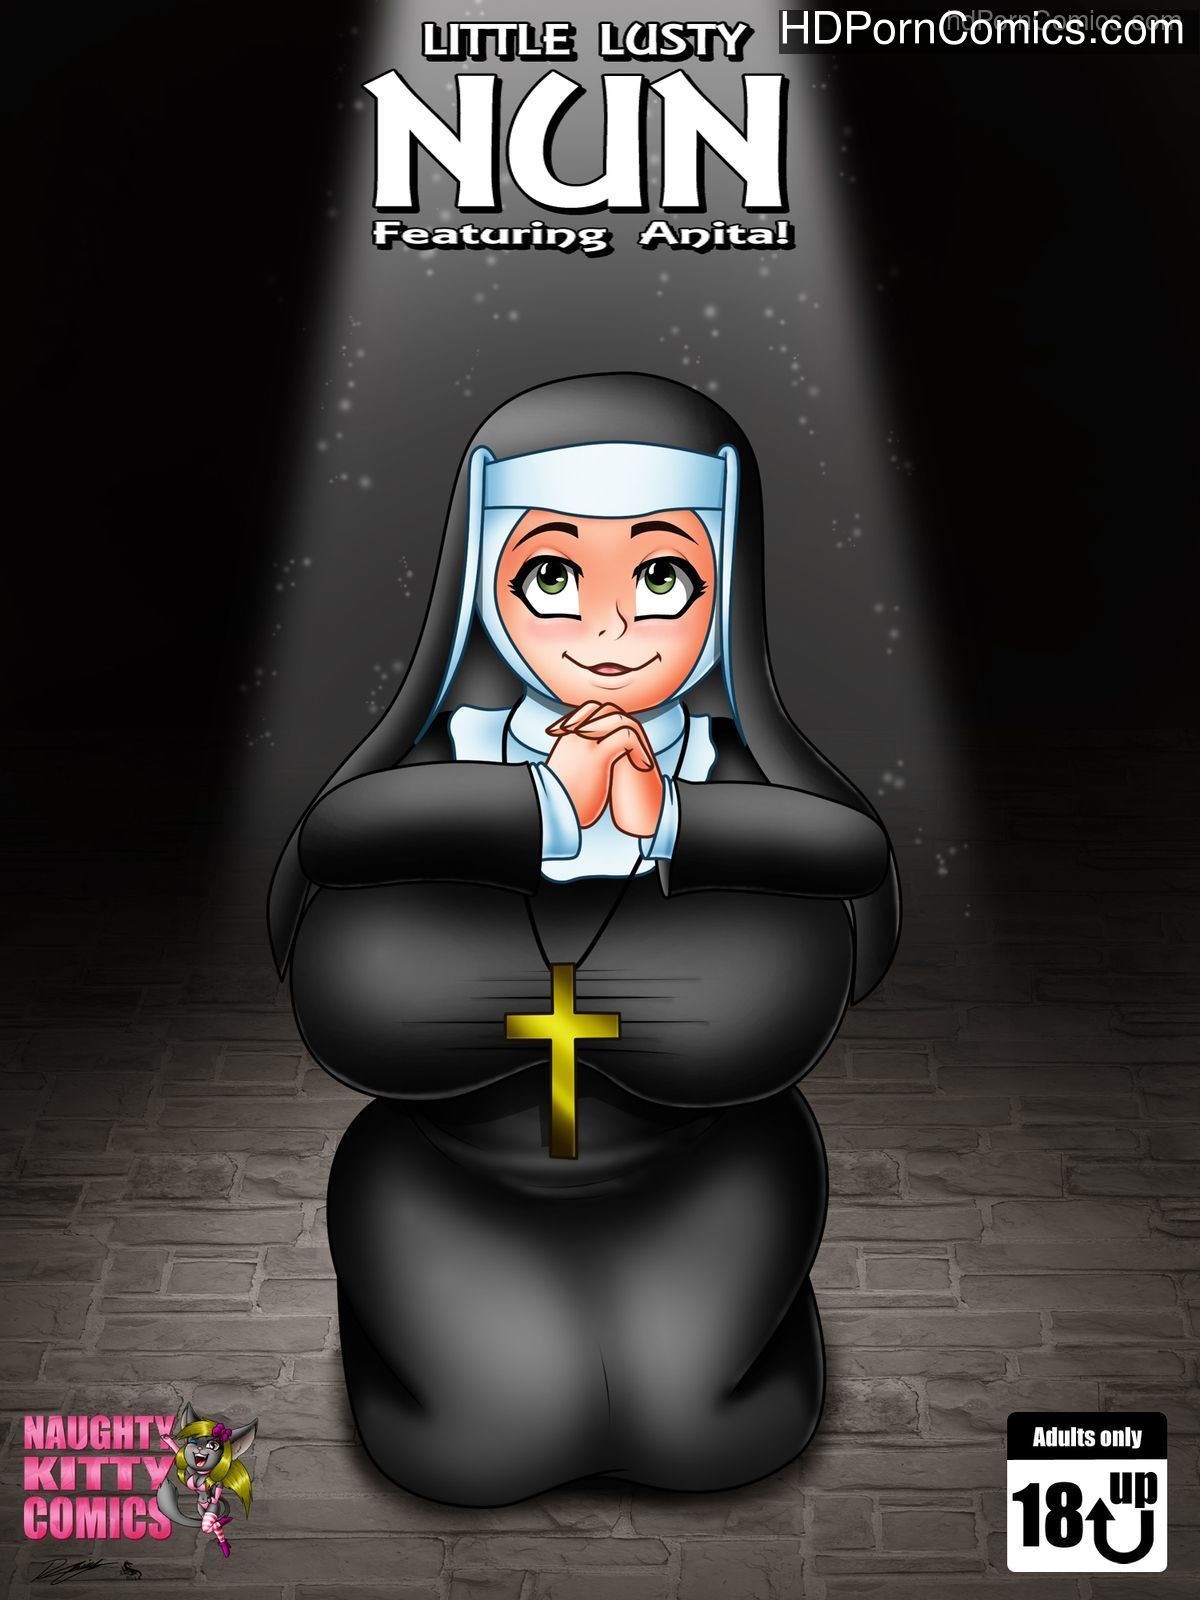 Shemale Nun Cartoon Porn Comics - Evil Rick] Little Lusty Nun free Cartoon Porn Comic â€“ HD Porn Comics